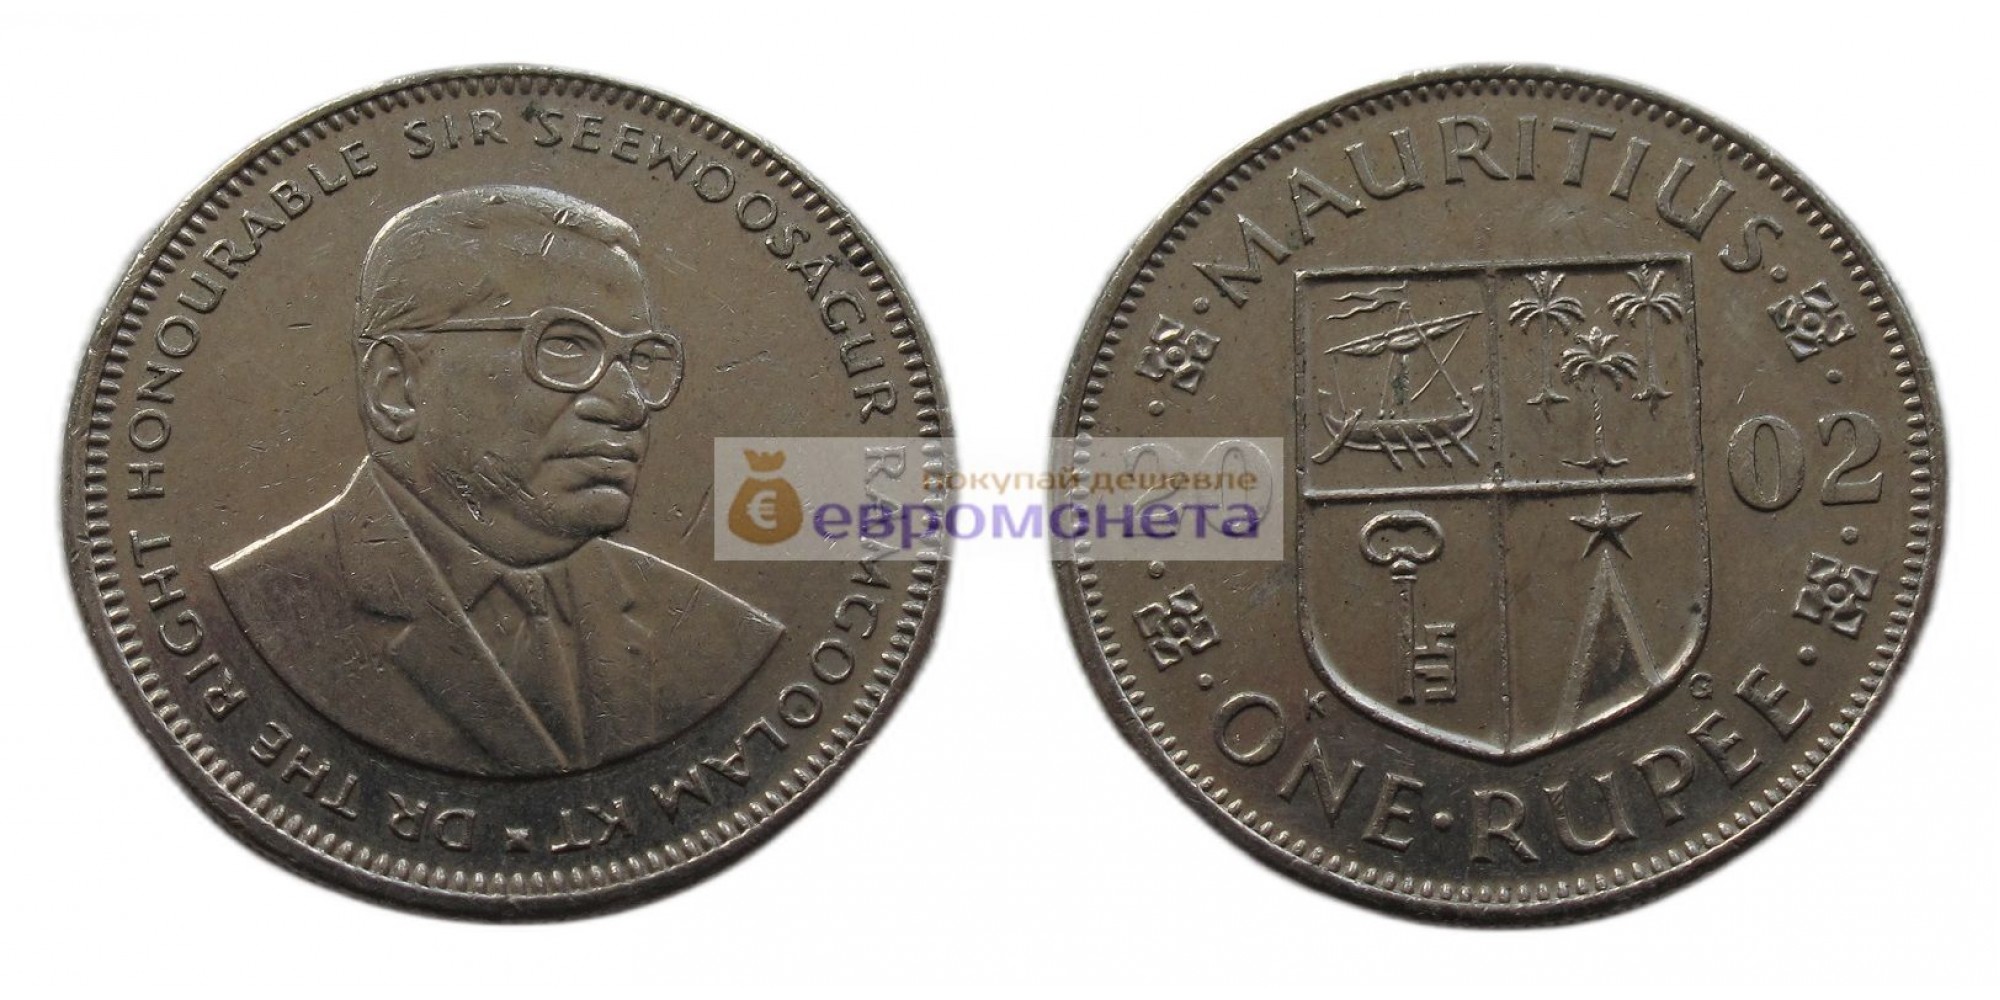 Республика Маврикий 1 рупия 2002 год. Сивусагур Рамгулам